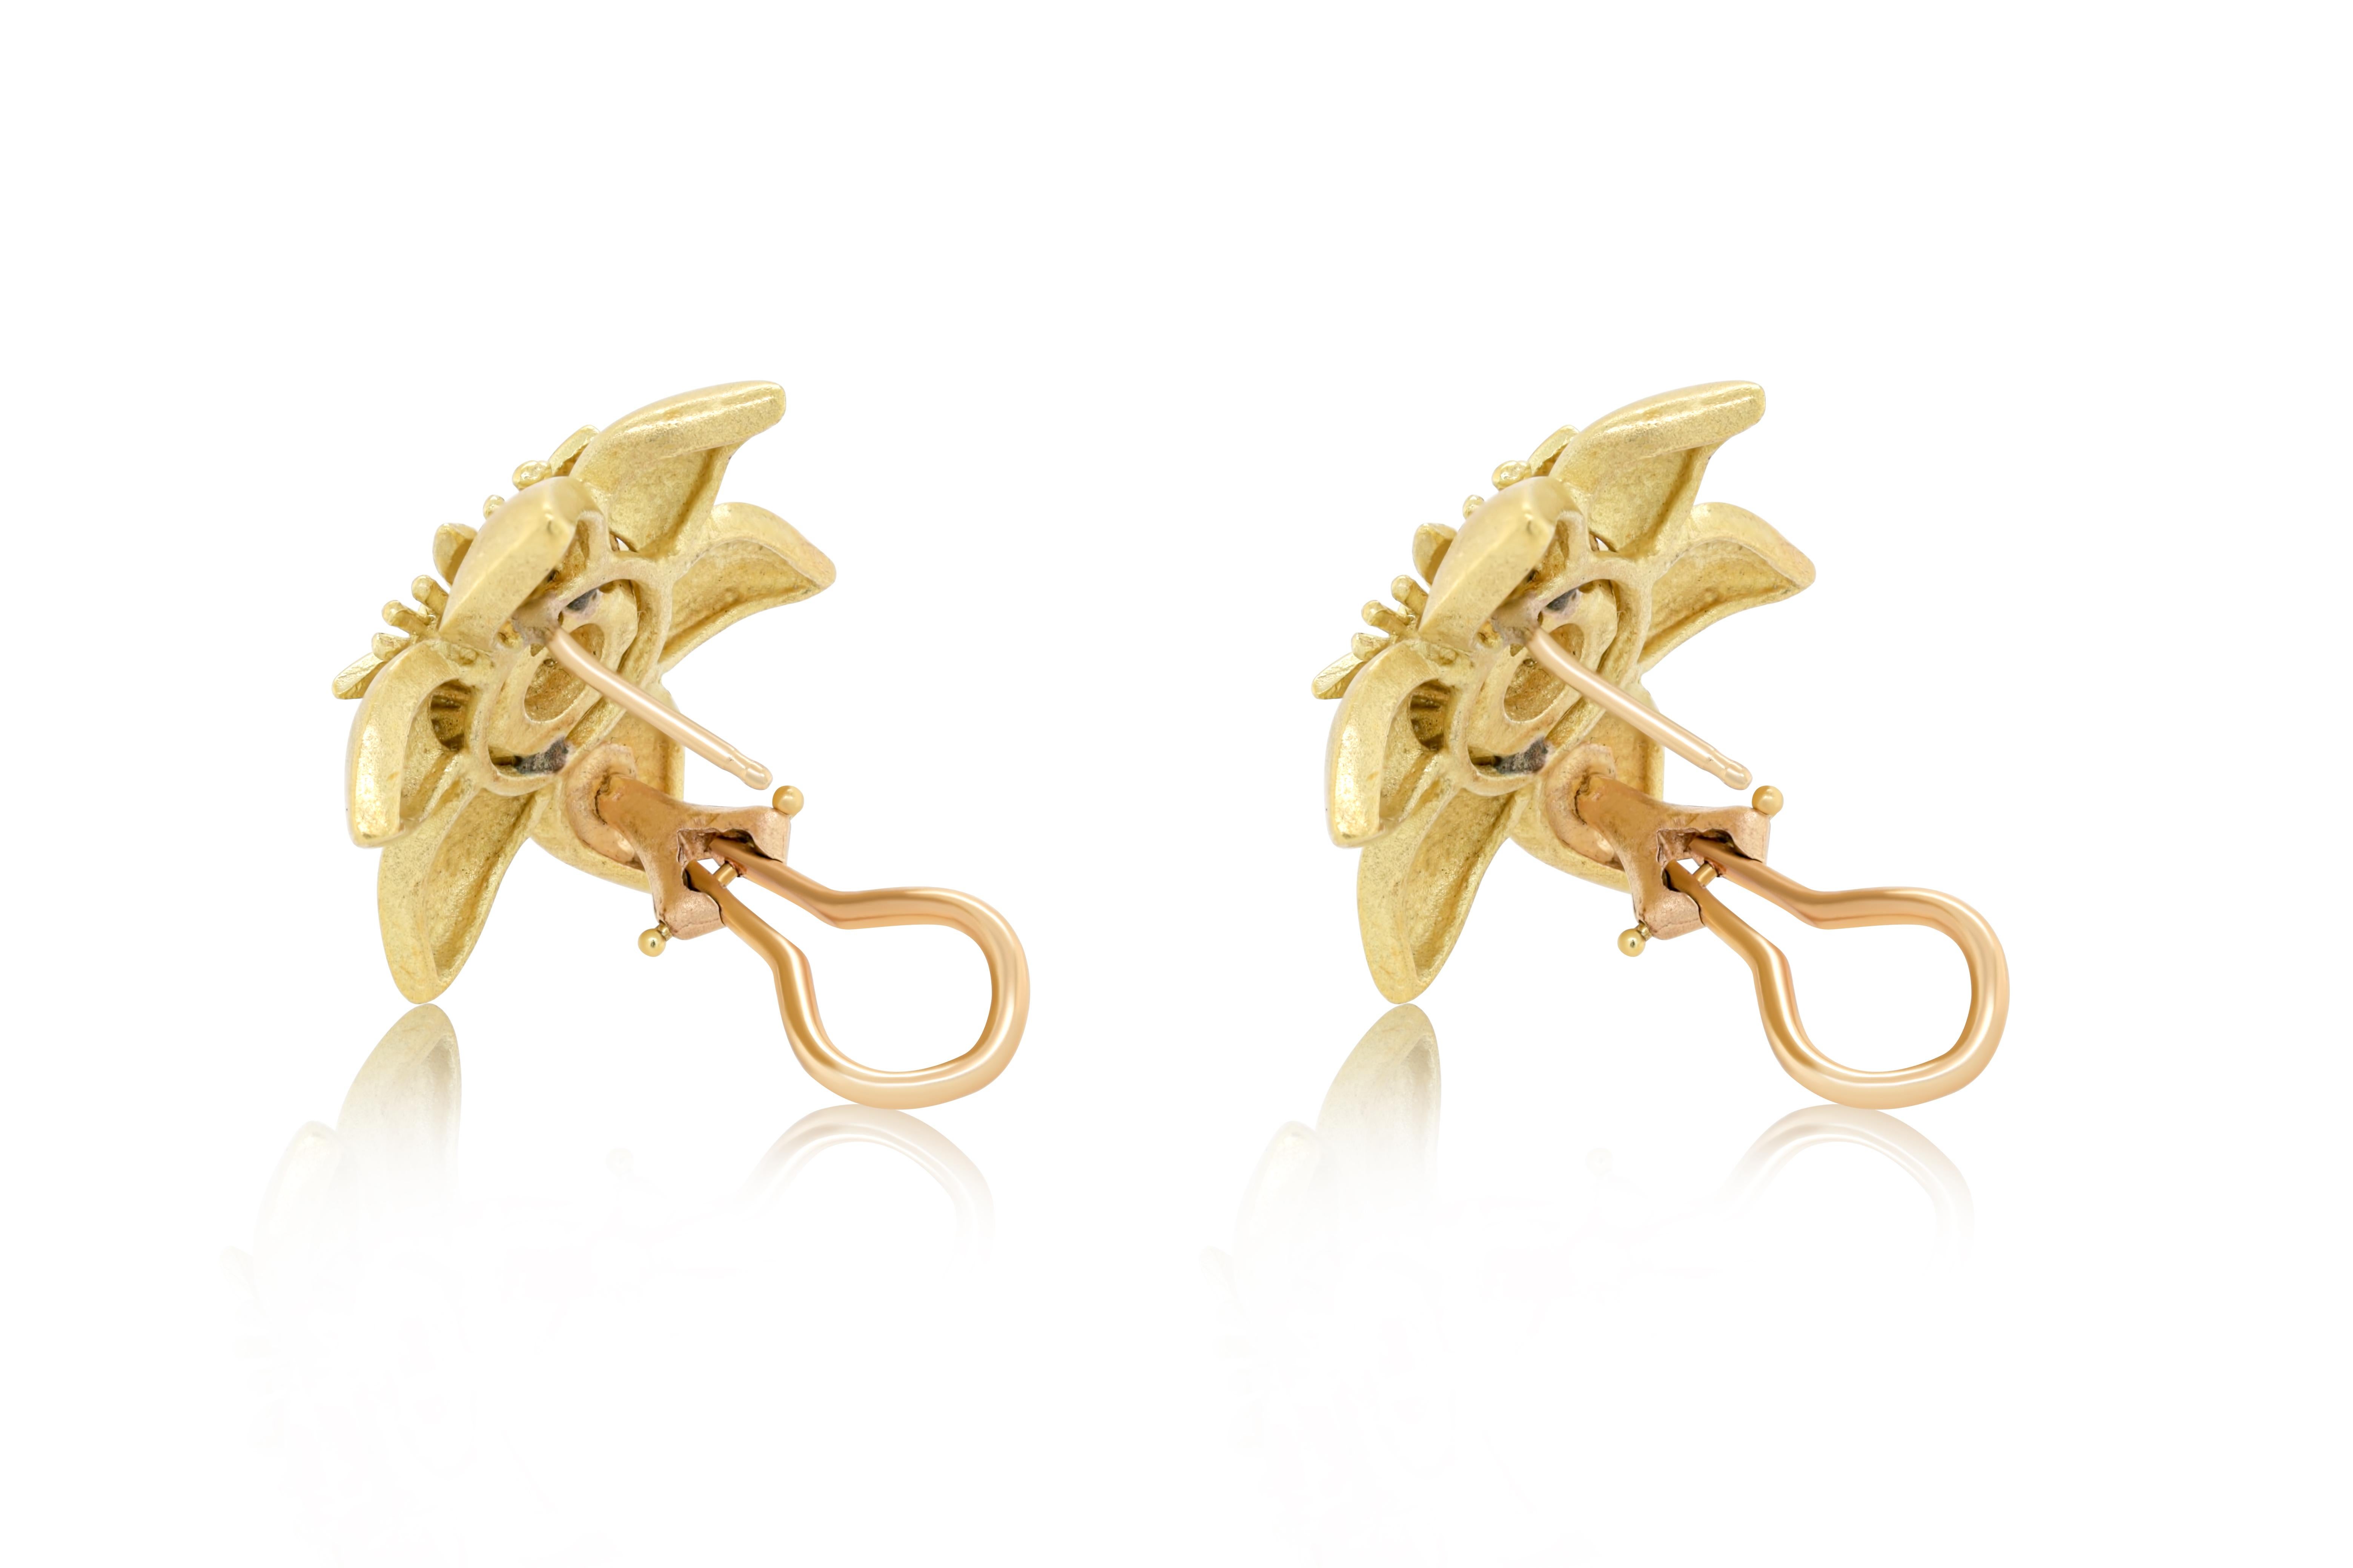 18 kt Gelbgold Diamant Blume Ohrringe mit 0,70 cts tw von runden Diamanten in der Mitte.
Diana M. ist seit über 35 Jahren ein führender Anbieter von hochwertigem Schmuck.
Diana M ist eine zentrale Anlaufstelle für alle Ihre Schmuckeinkäufe und führt